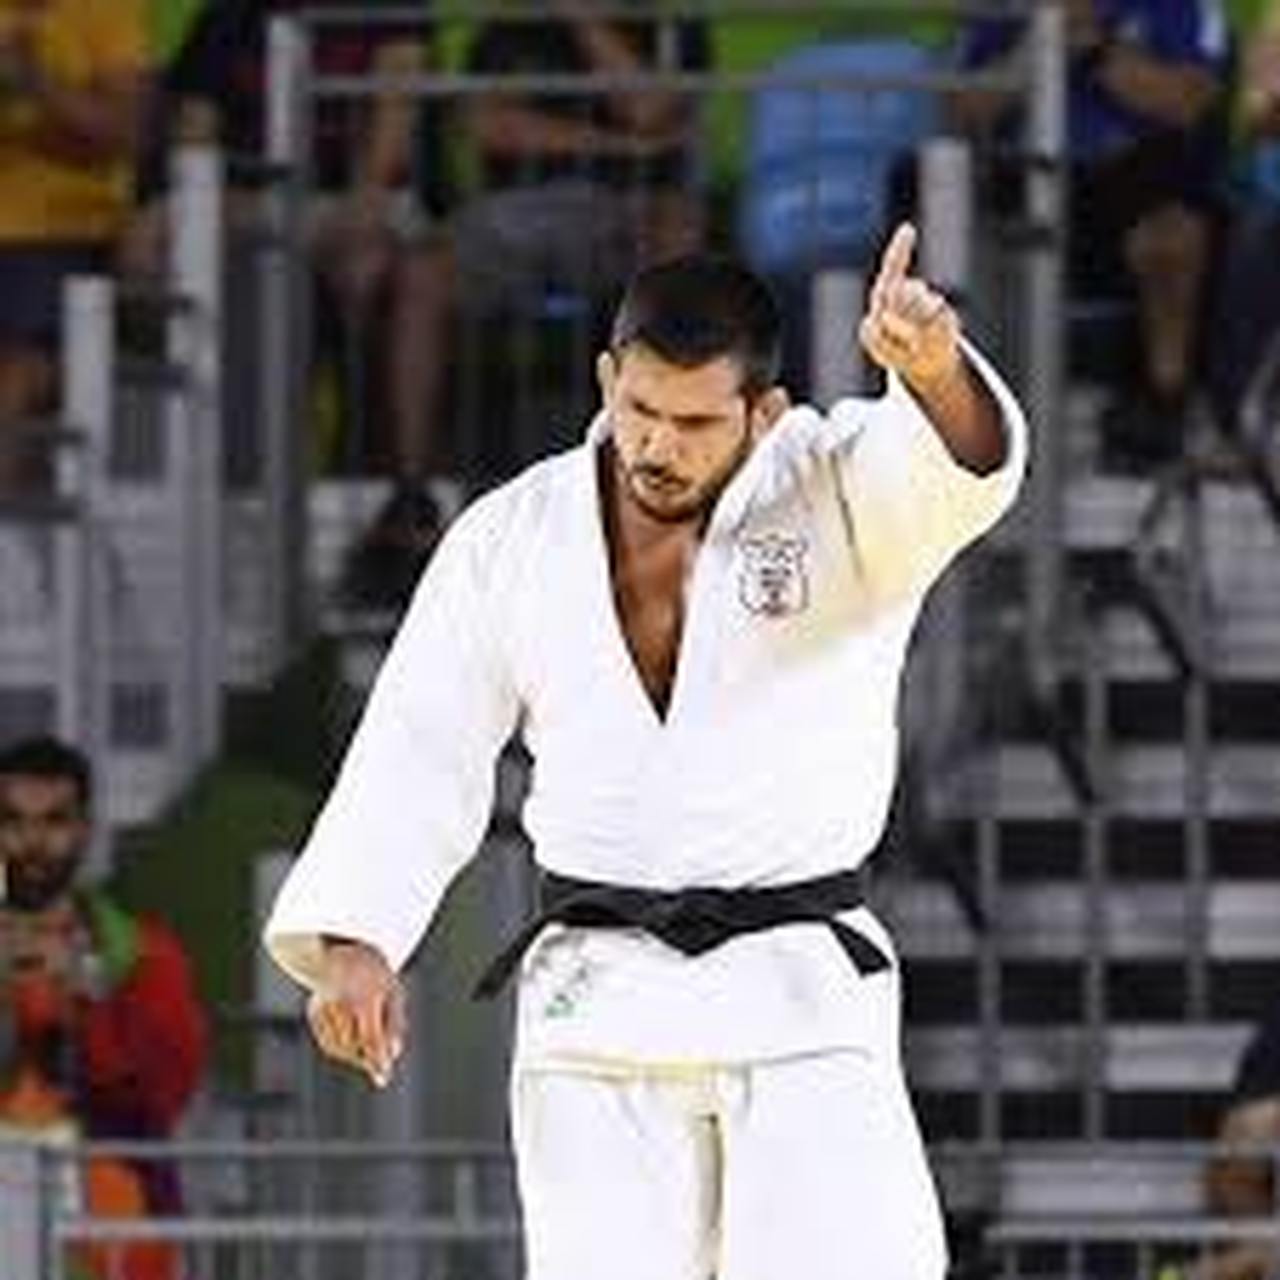 Falando em Olimpíada, Nacif Elias Júnior, brasileiro naturalizado libanês, foi o porta-bandeira do Líbano nos Jogos de 2016, no Rio de Janeiro. Ele chegou, antes, a defender a Seleção Brasileira de Judô.